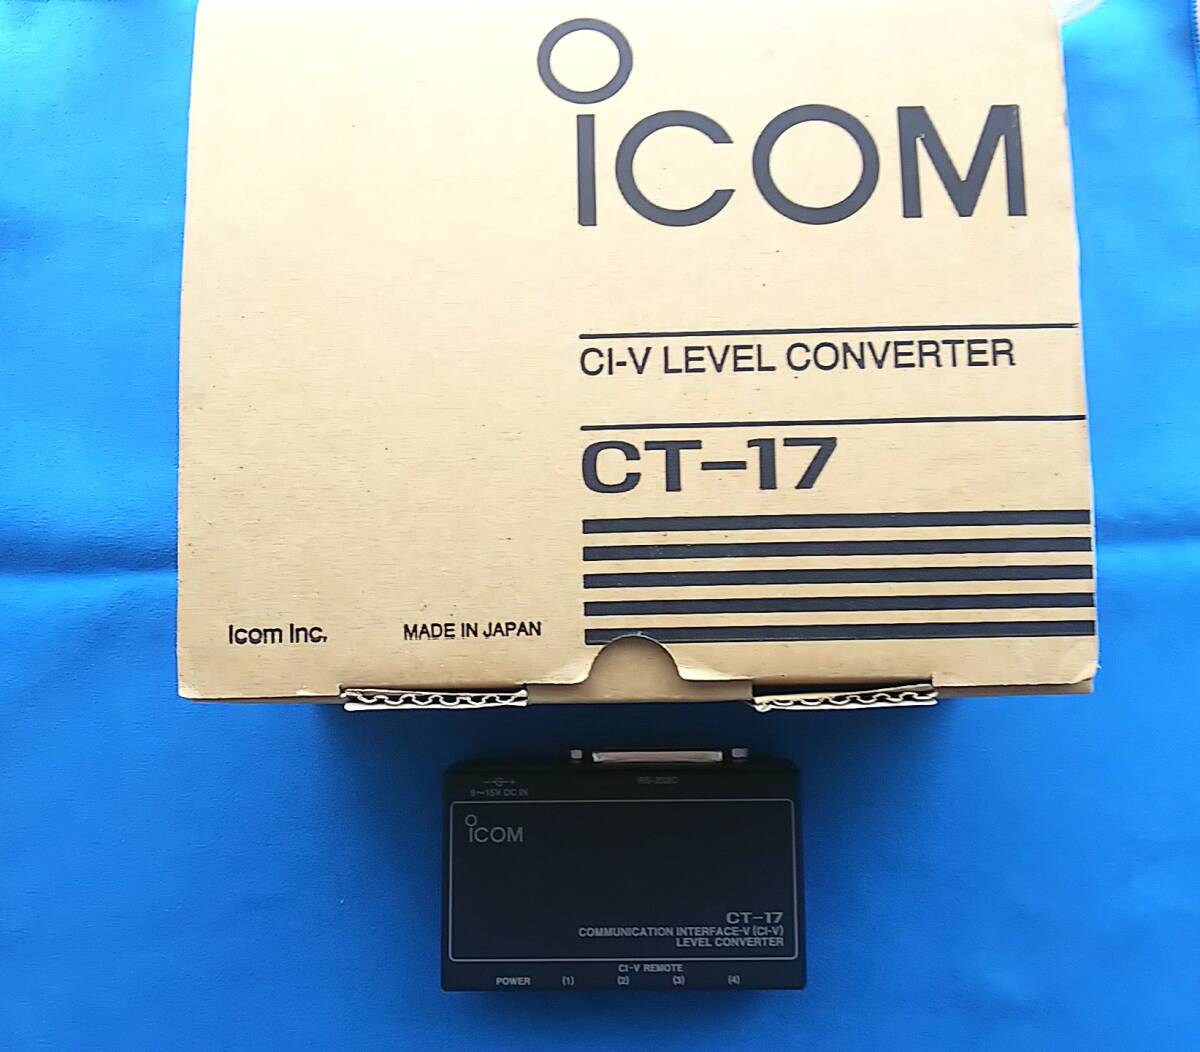 ICOM CT-17 CI-V LEVEL CONVERTER